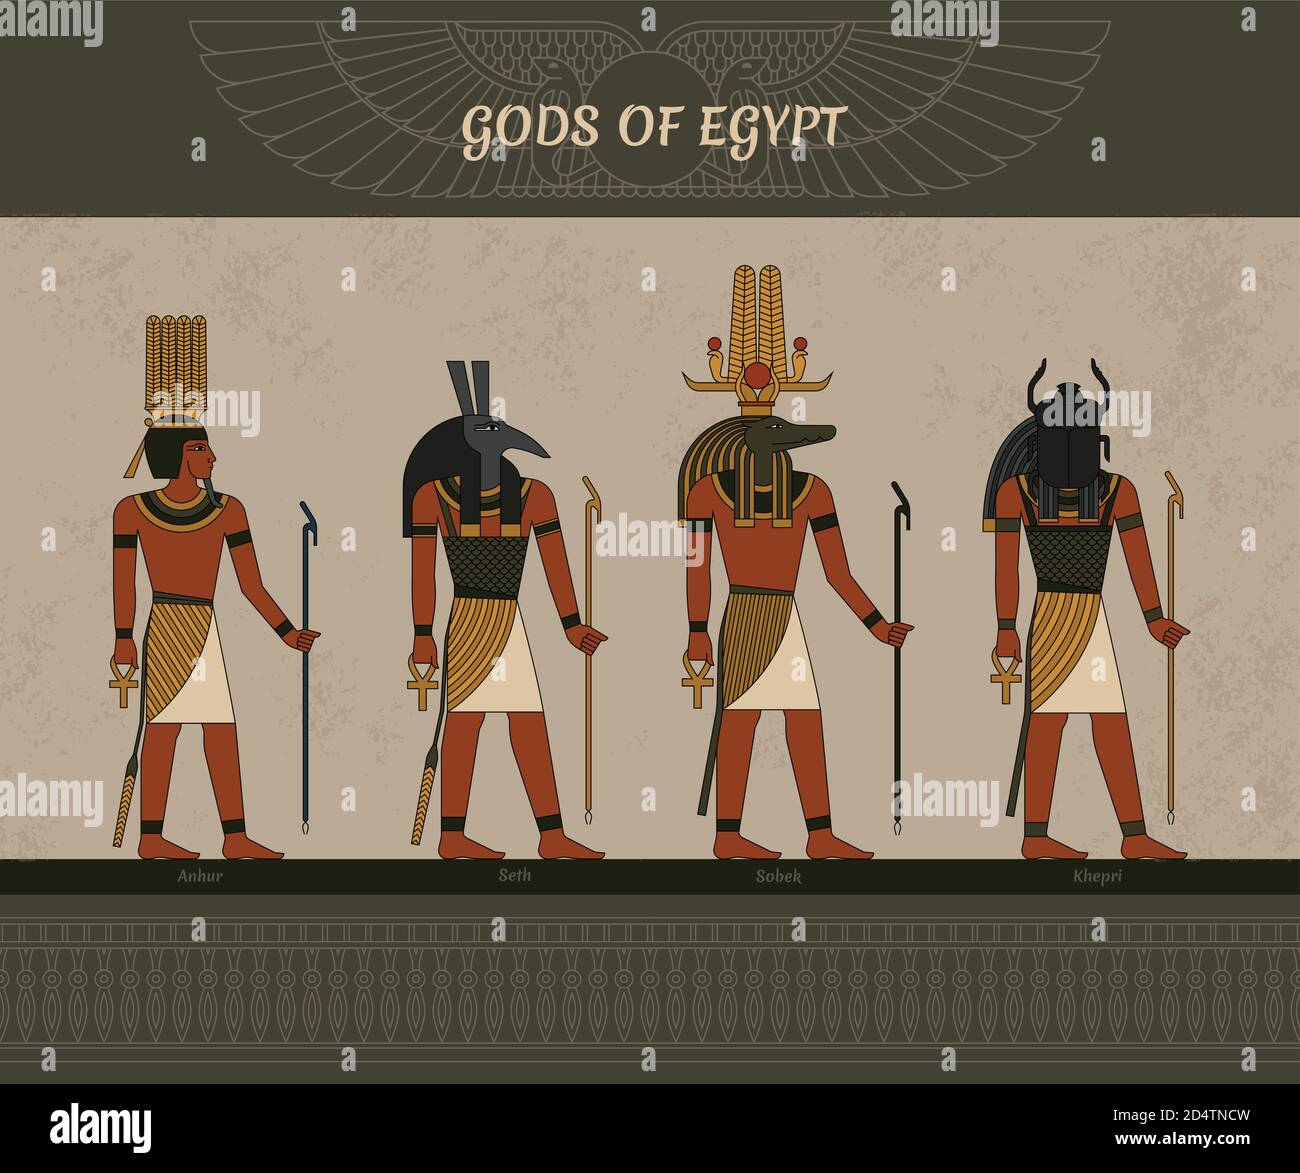 Vektor-Illustration Symbole des alten Ägypten ägyptische geflügelte Sonne, Götter Thoth, Anhur, Sobek, Khepri und andere Symbol der ägyptischen. Stock Vektor